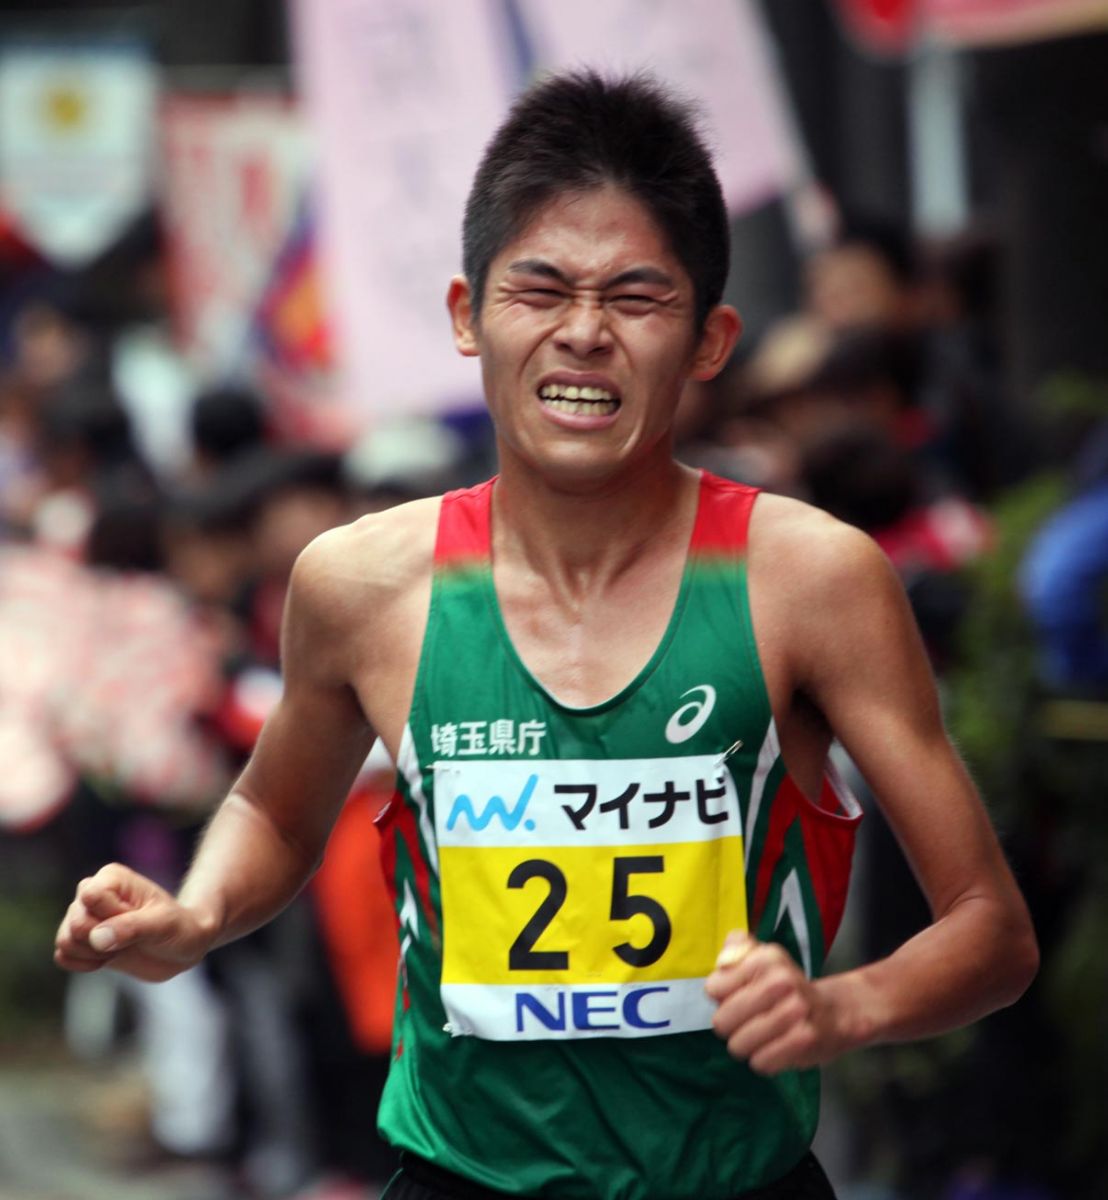 離譜的日本奧運馬拉松門檻，連最強公務員川內優輝都沒辦法達到。資料照/中華民國田徑協會提供